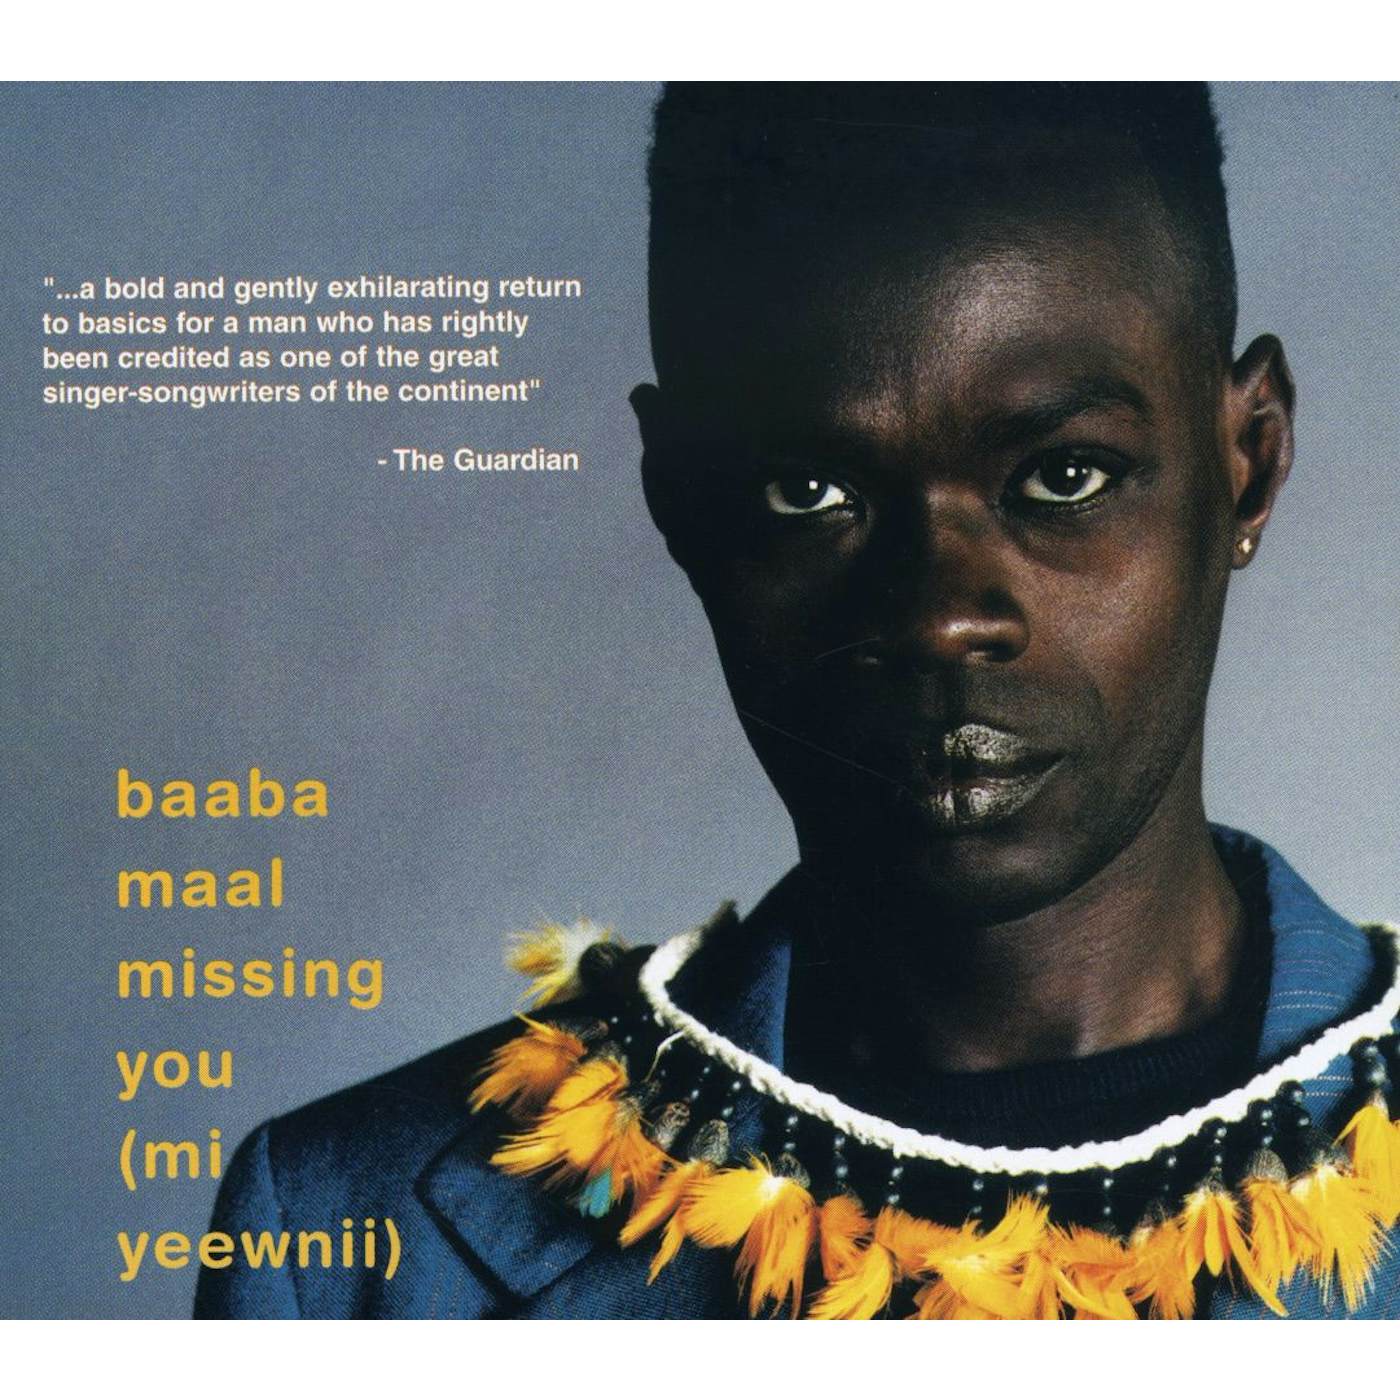 Baaba Maal MI YEEWNII-MISSING YOU CD